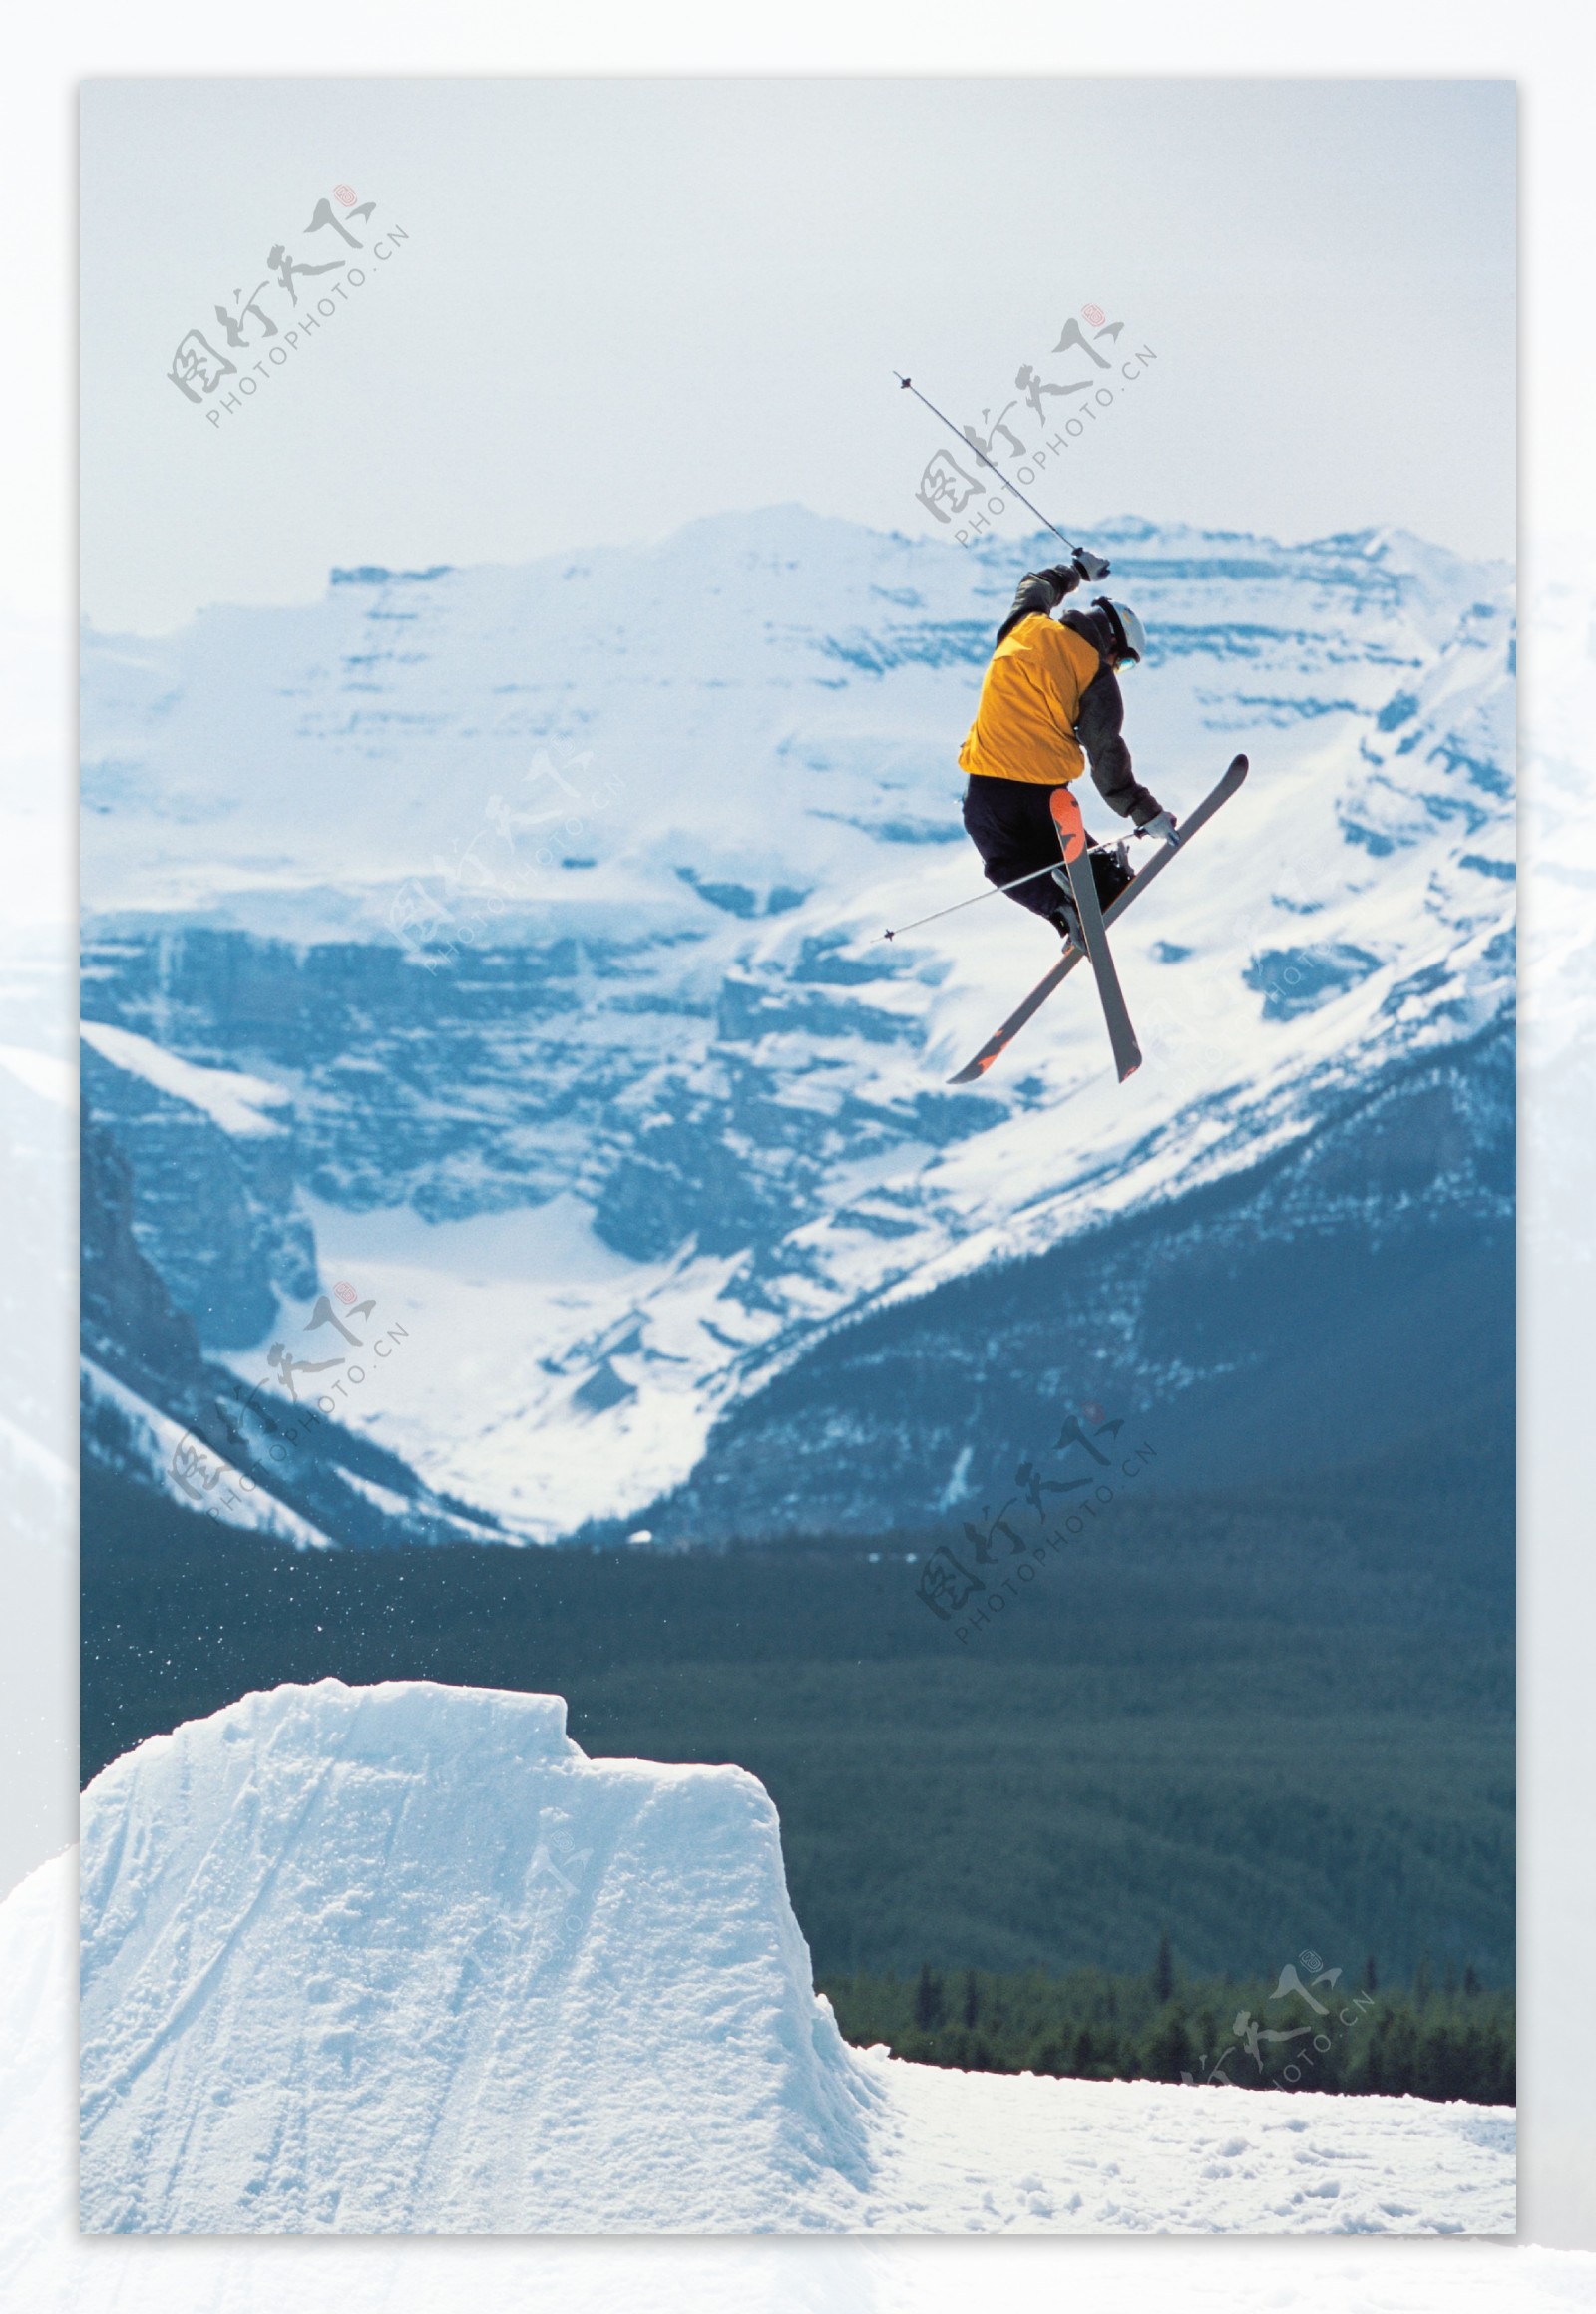 双板滑雪飞起瞬间摄影图片图片